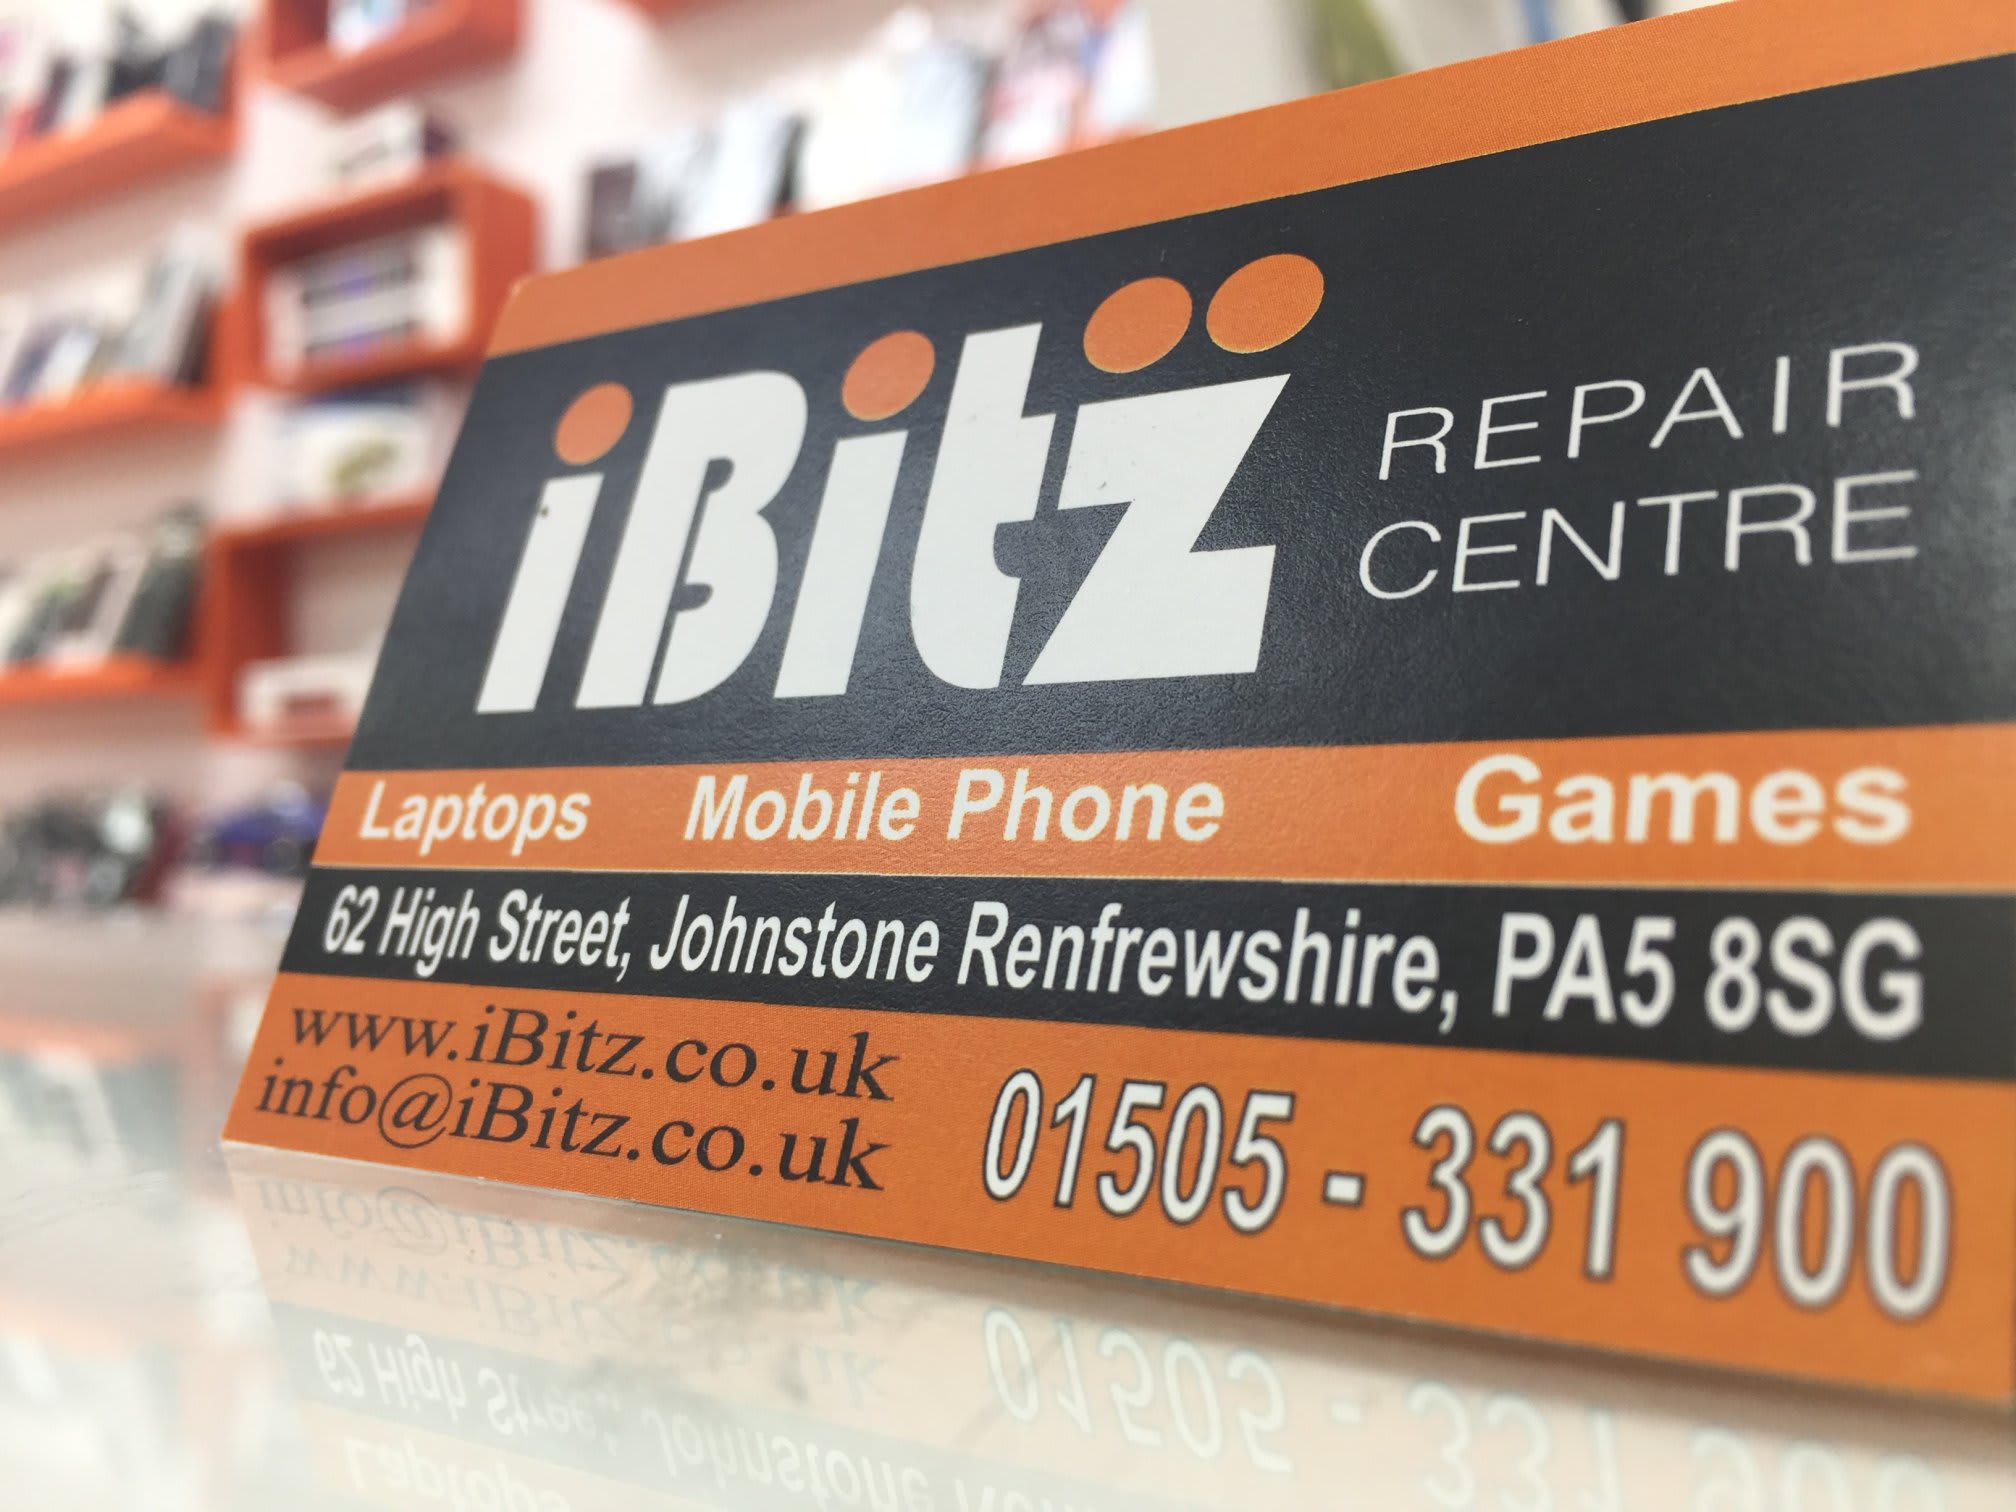 Images iBitz Phone & Laptop Repair Centre